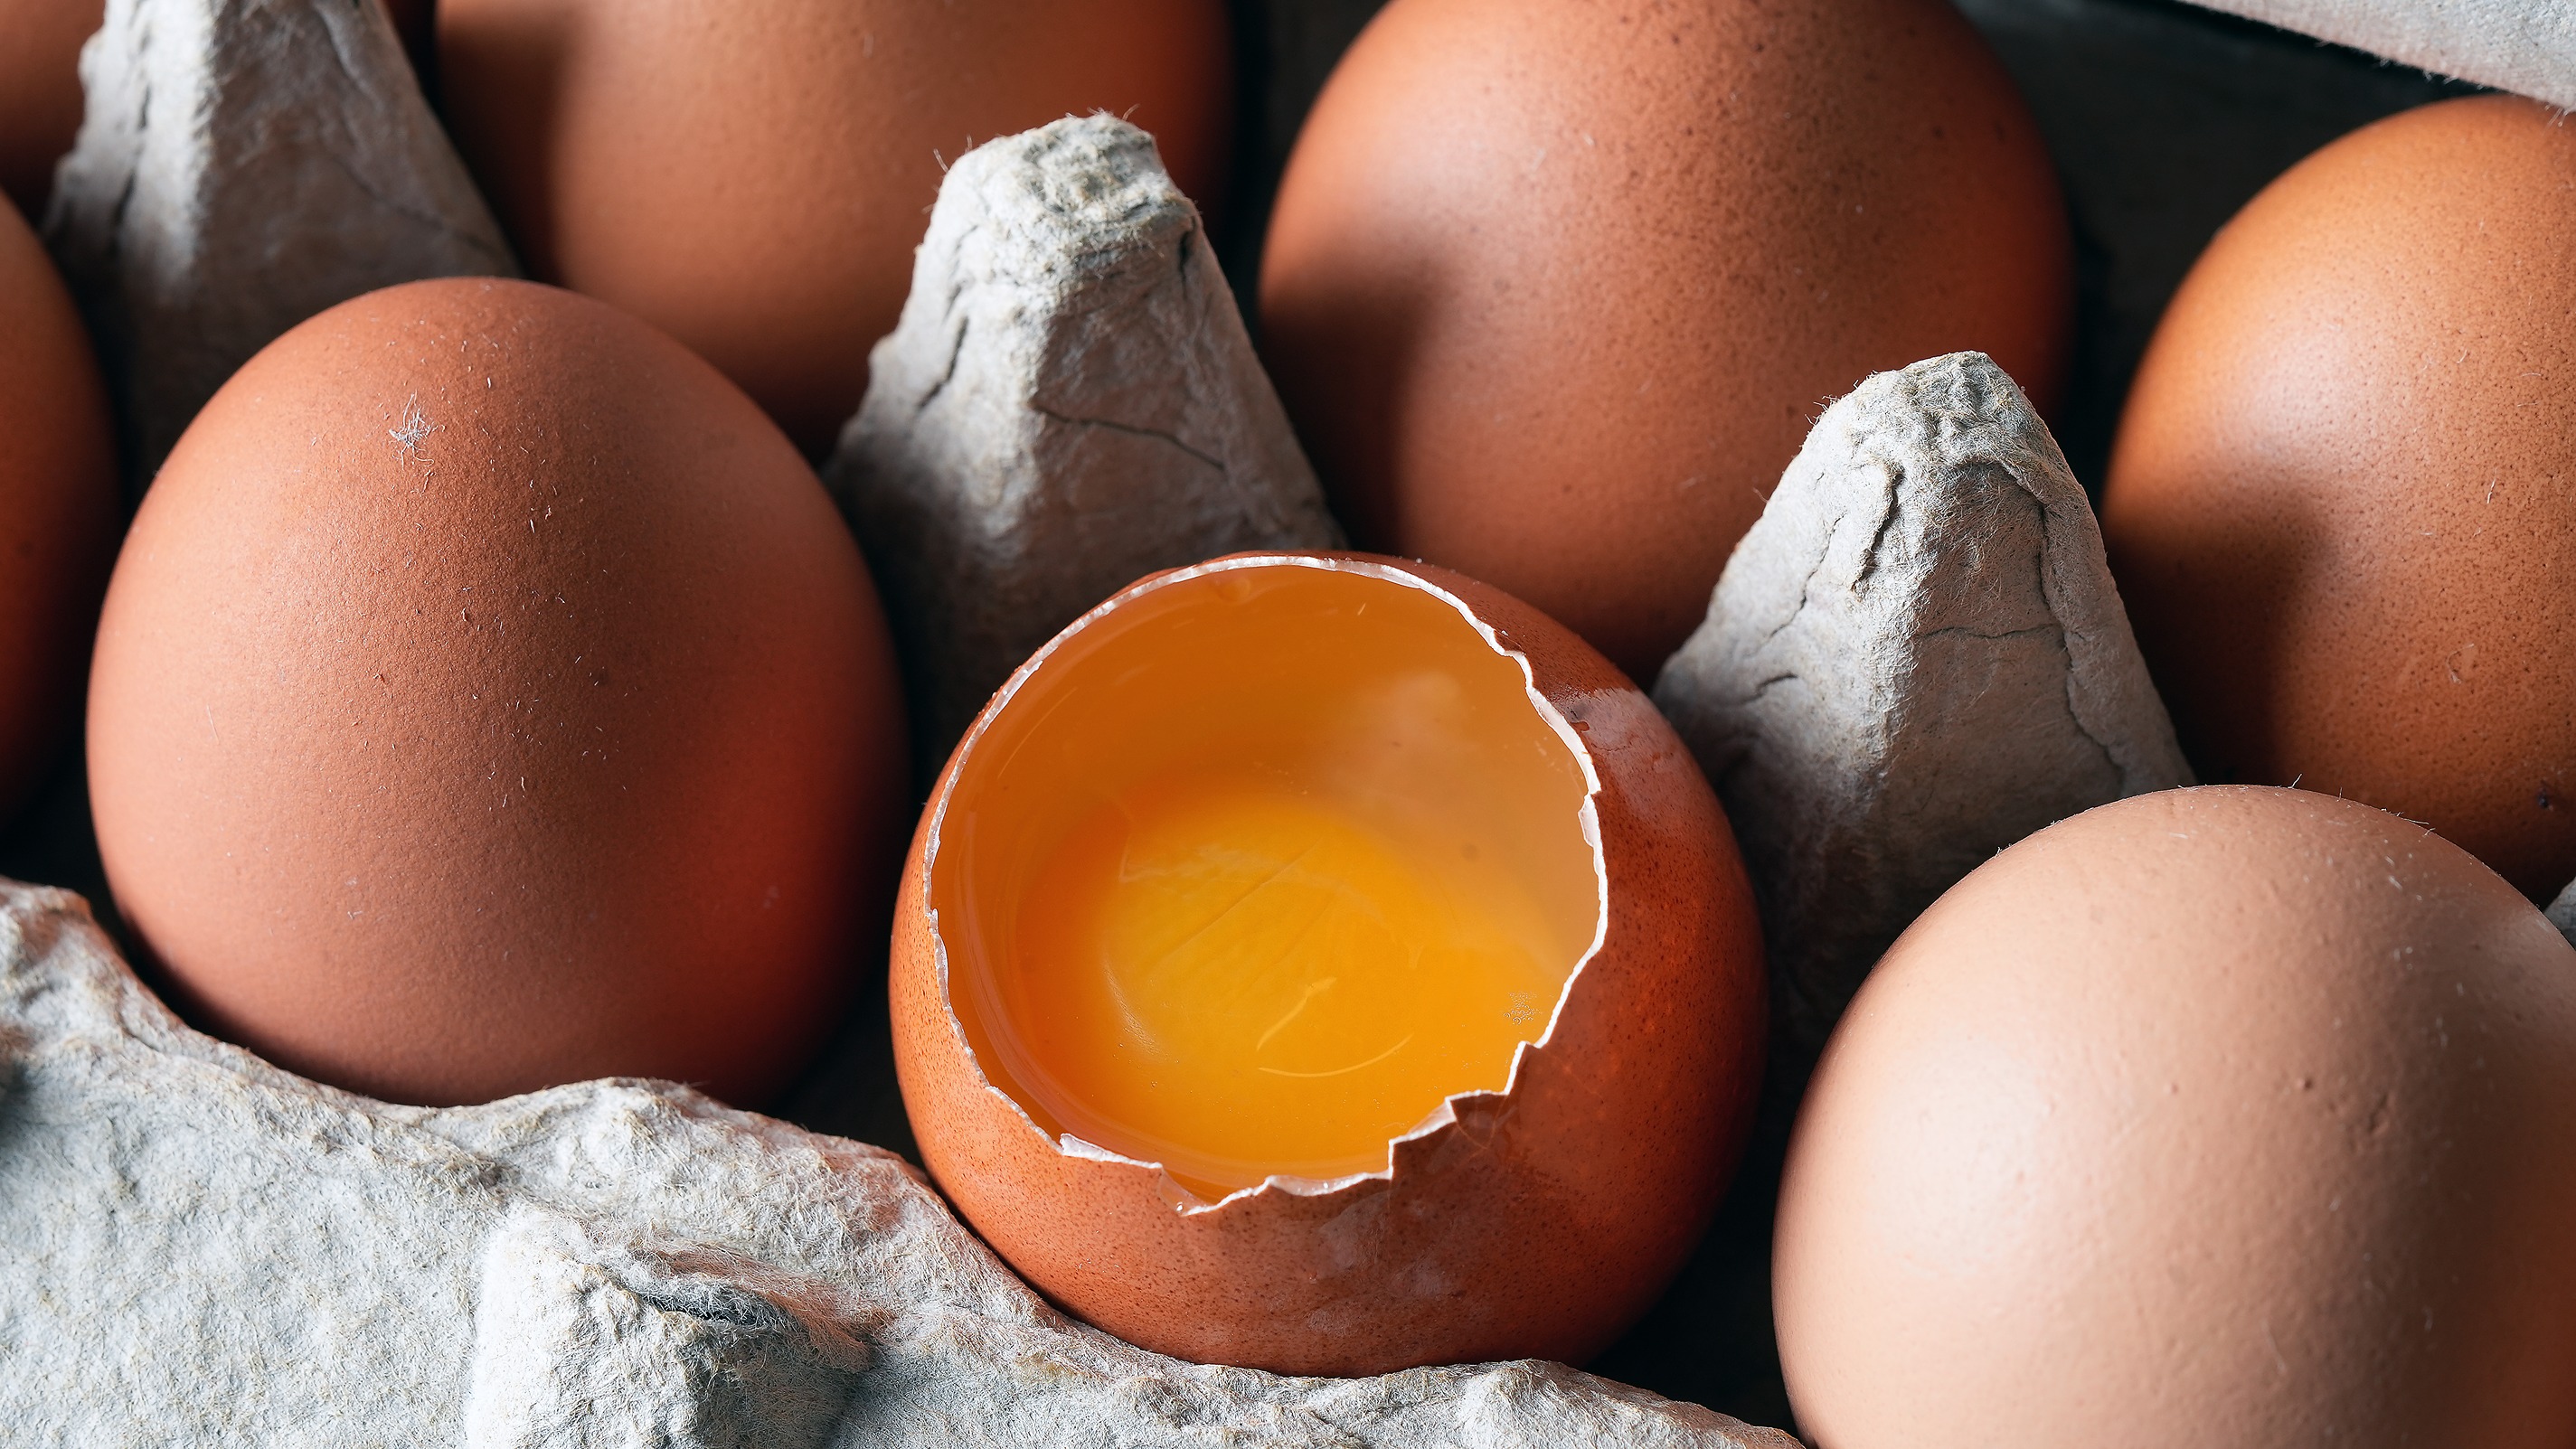 Cracked open brown egg reveals dark orange yolk